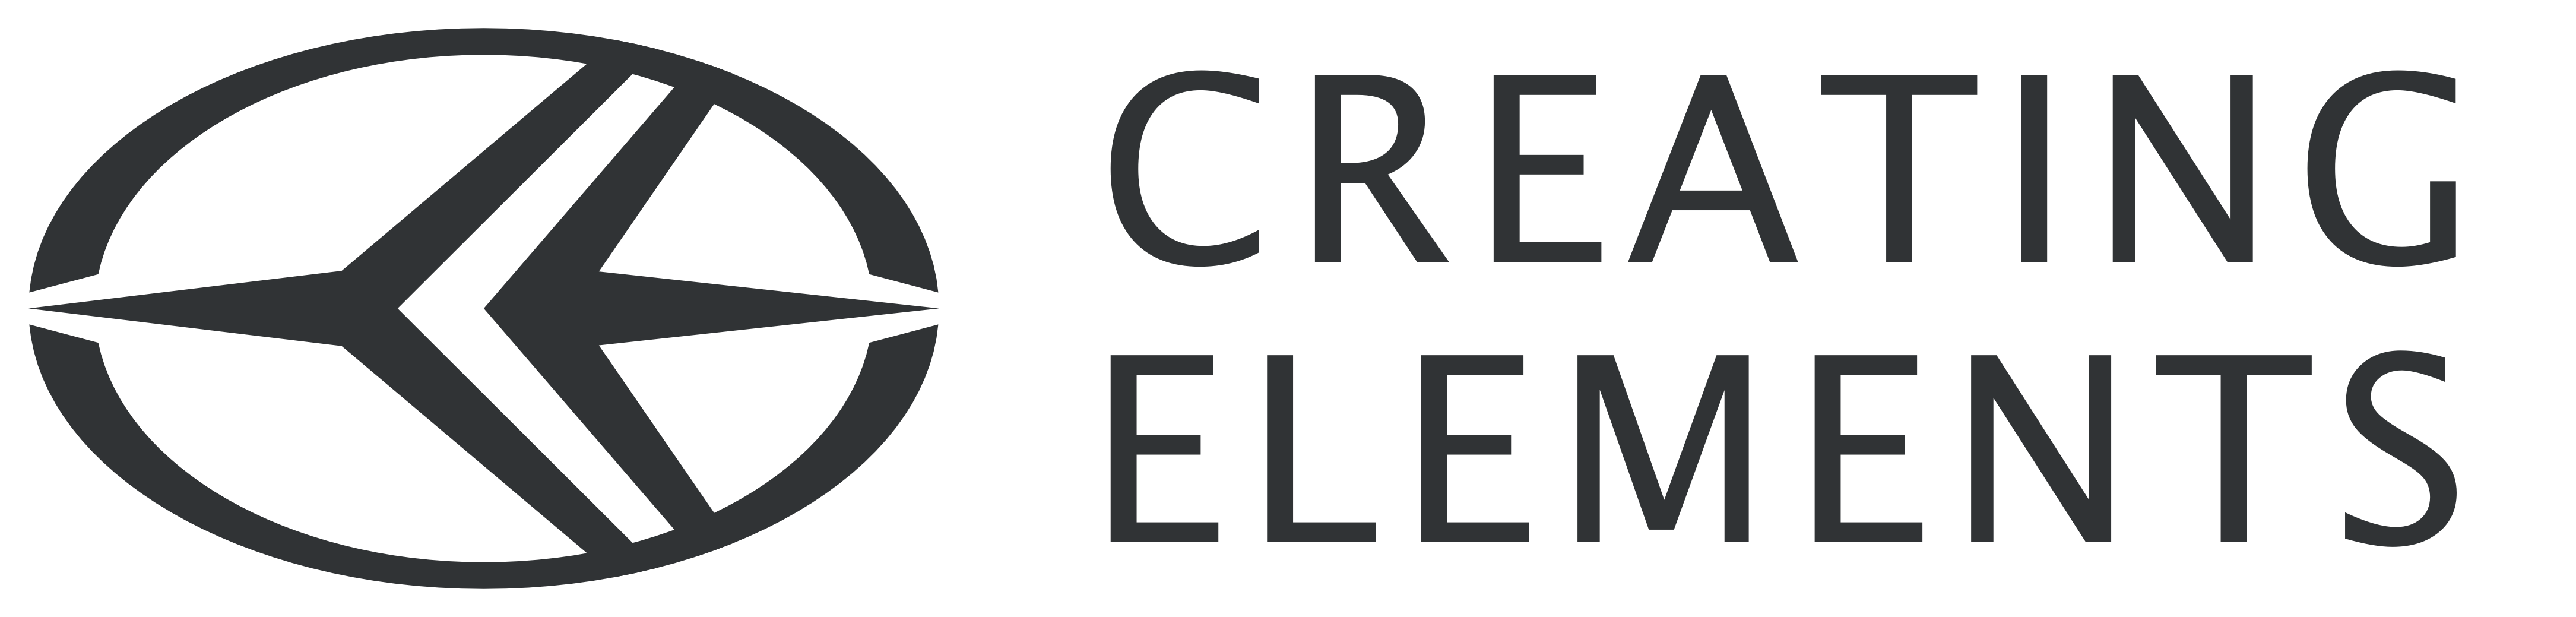 Logo_CE_7021